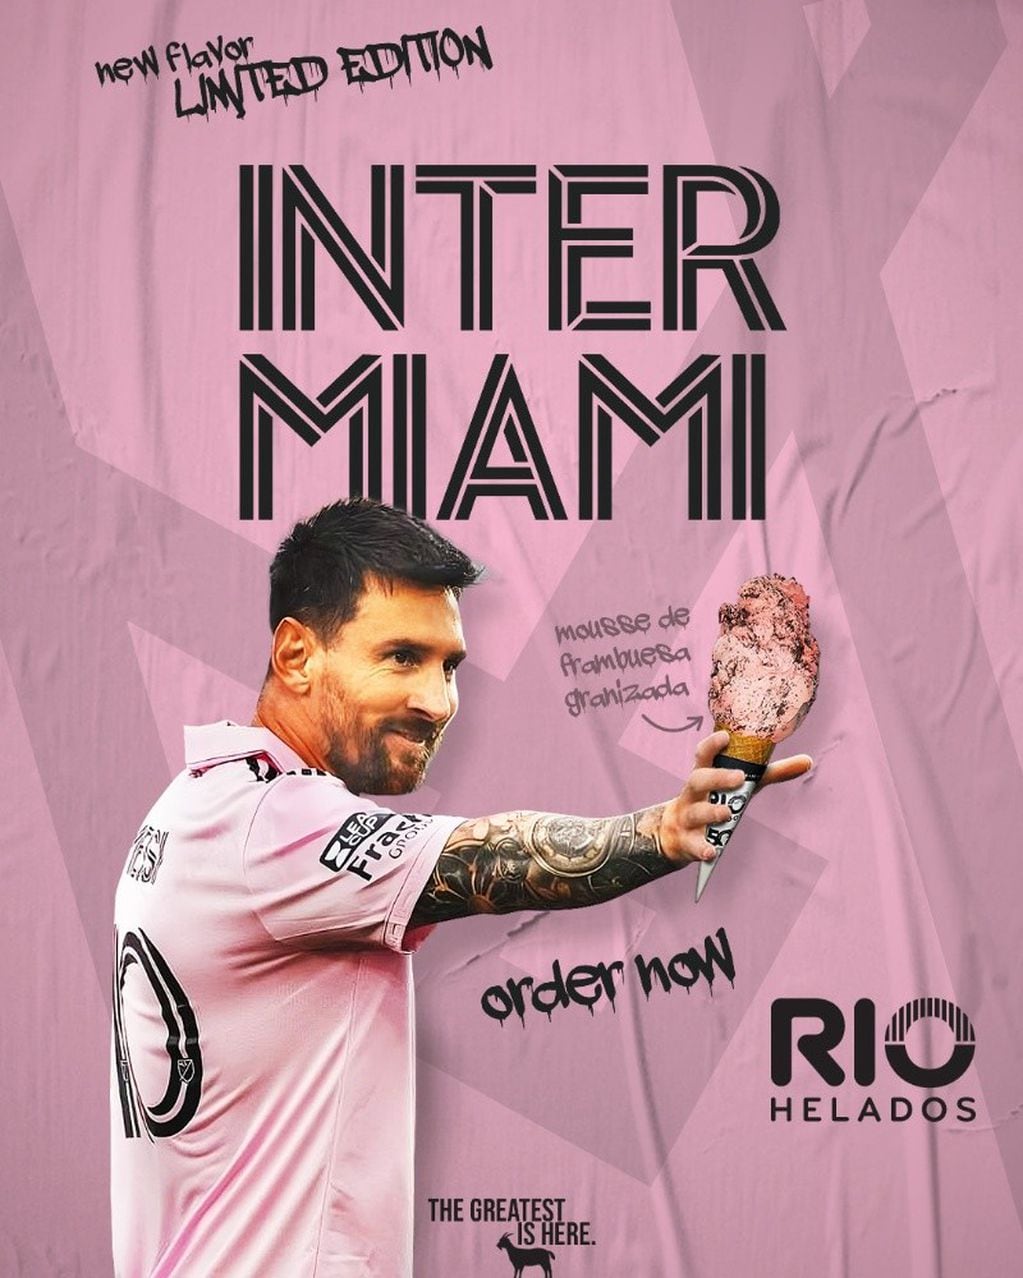 La letra completa de la canción del Inter Miami en honor a Lionel